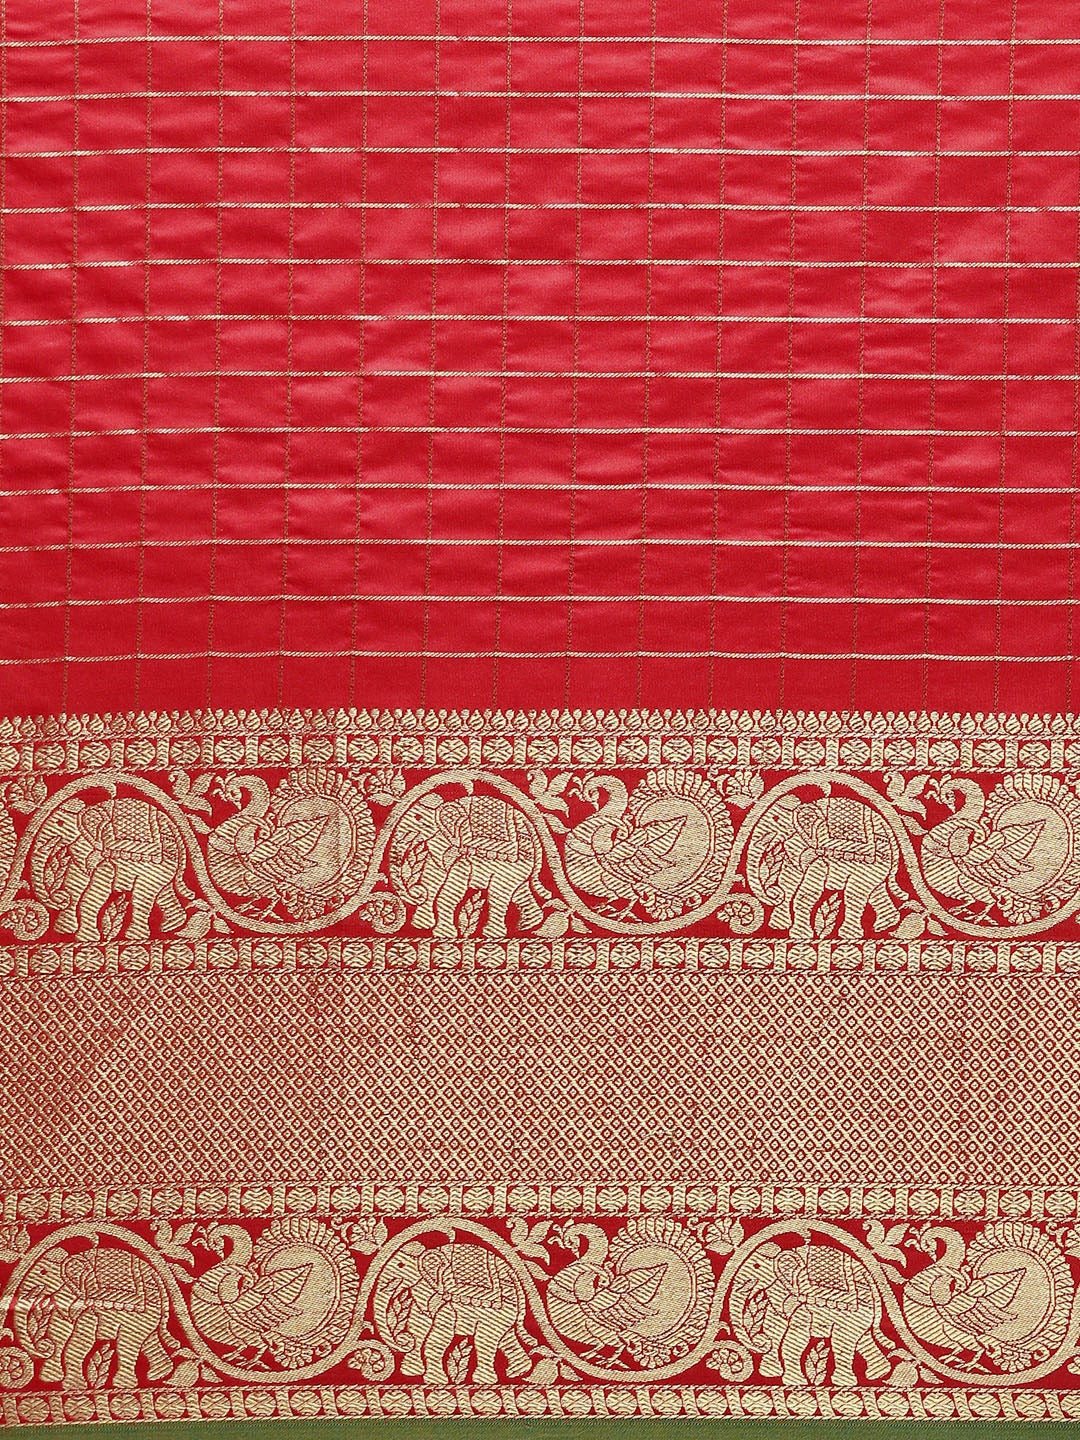 Attractive Banarasi Red Colour Woven Design Saree